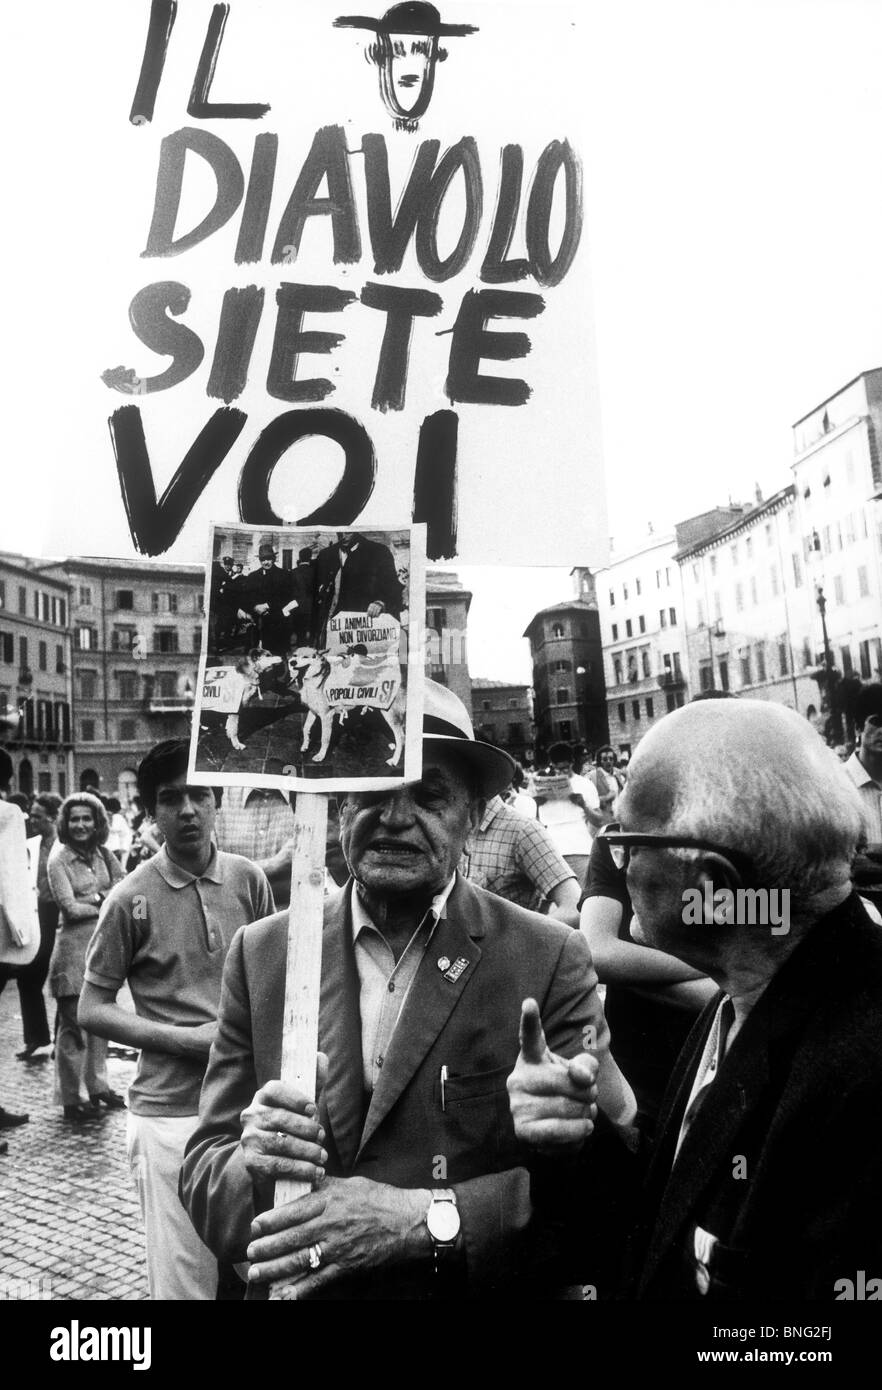 pastel Show Redundant Dimostrazione pubblica,referendum per abrogare la legge sul divorzio,Italia  1974 Foto stock - Alamy